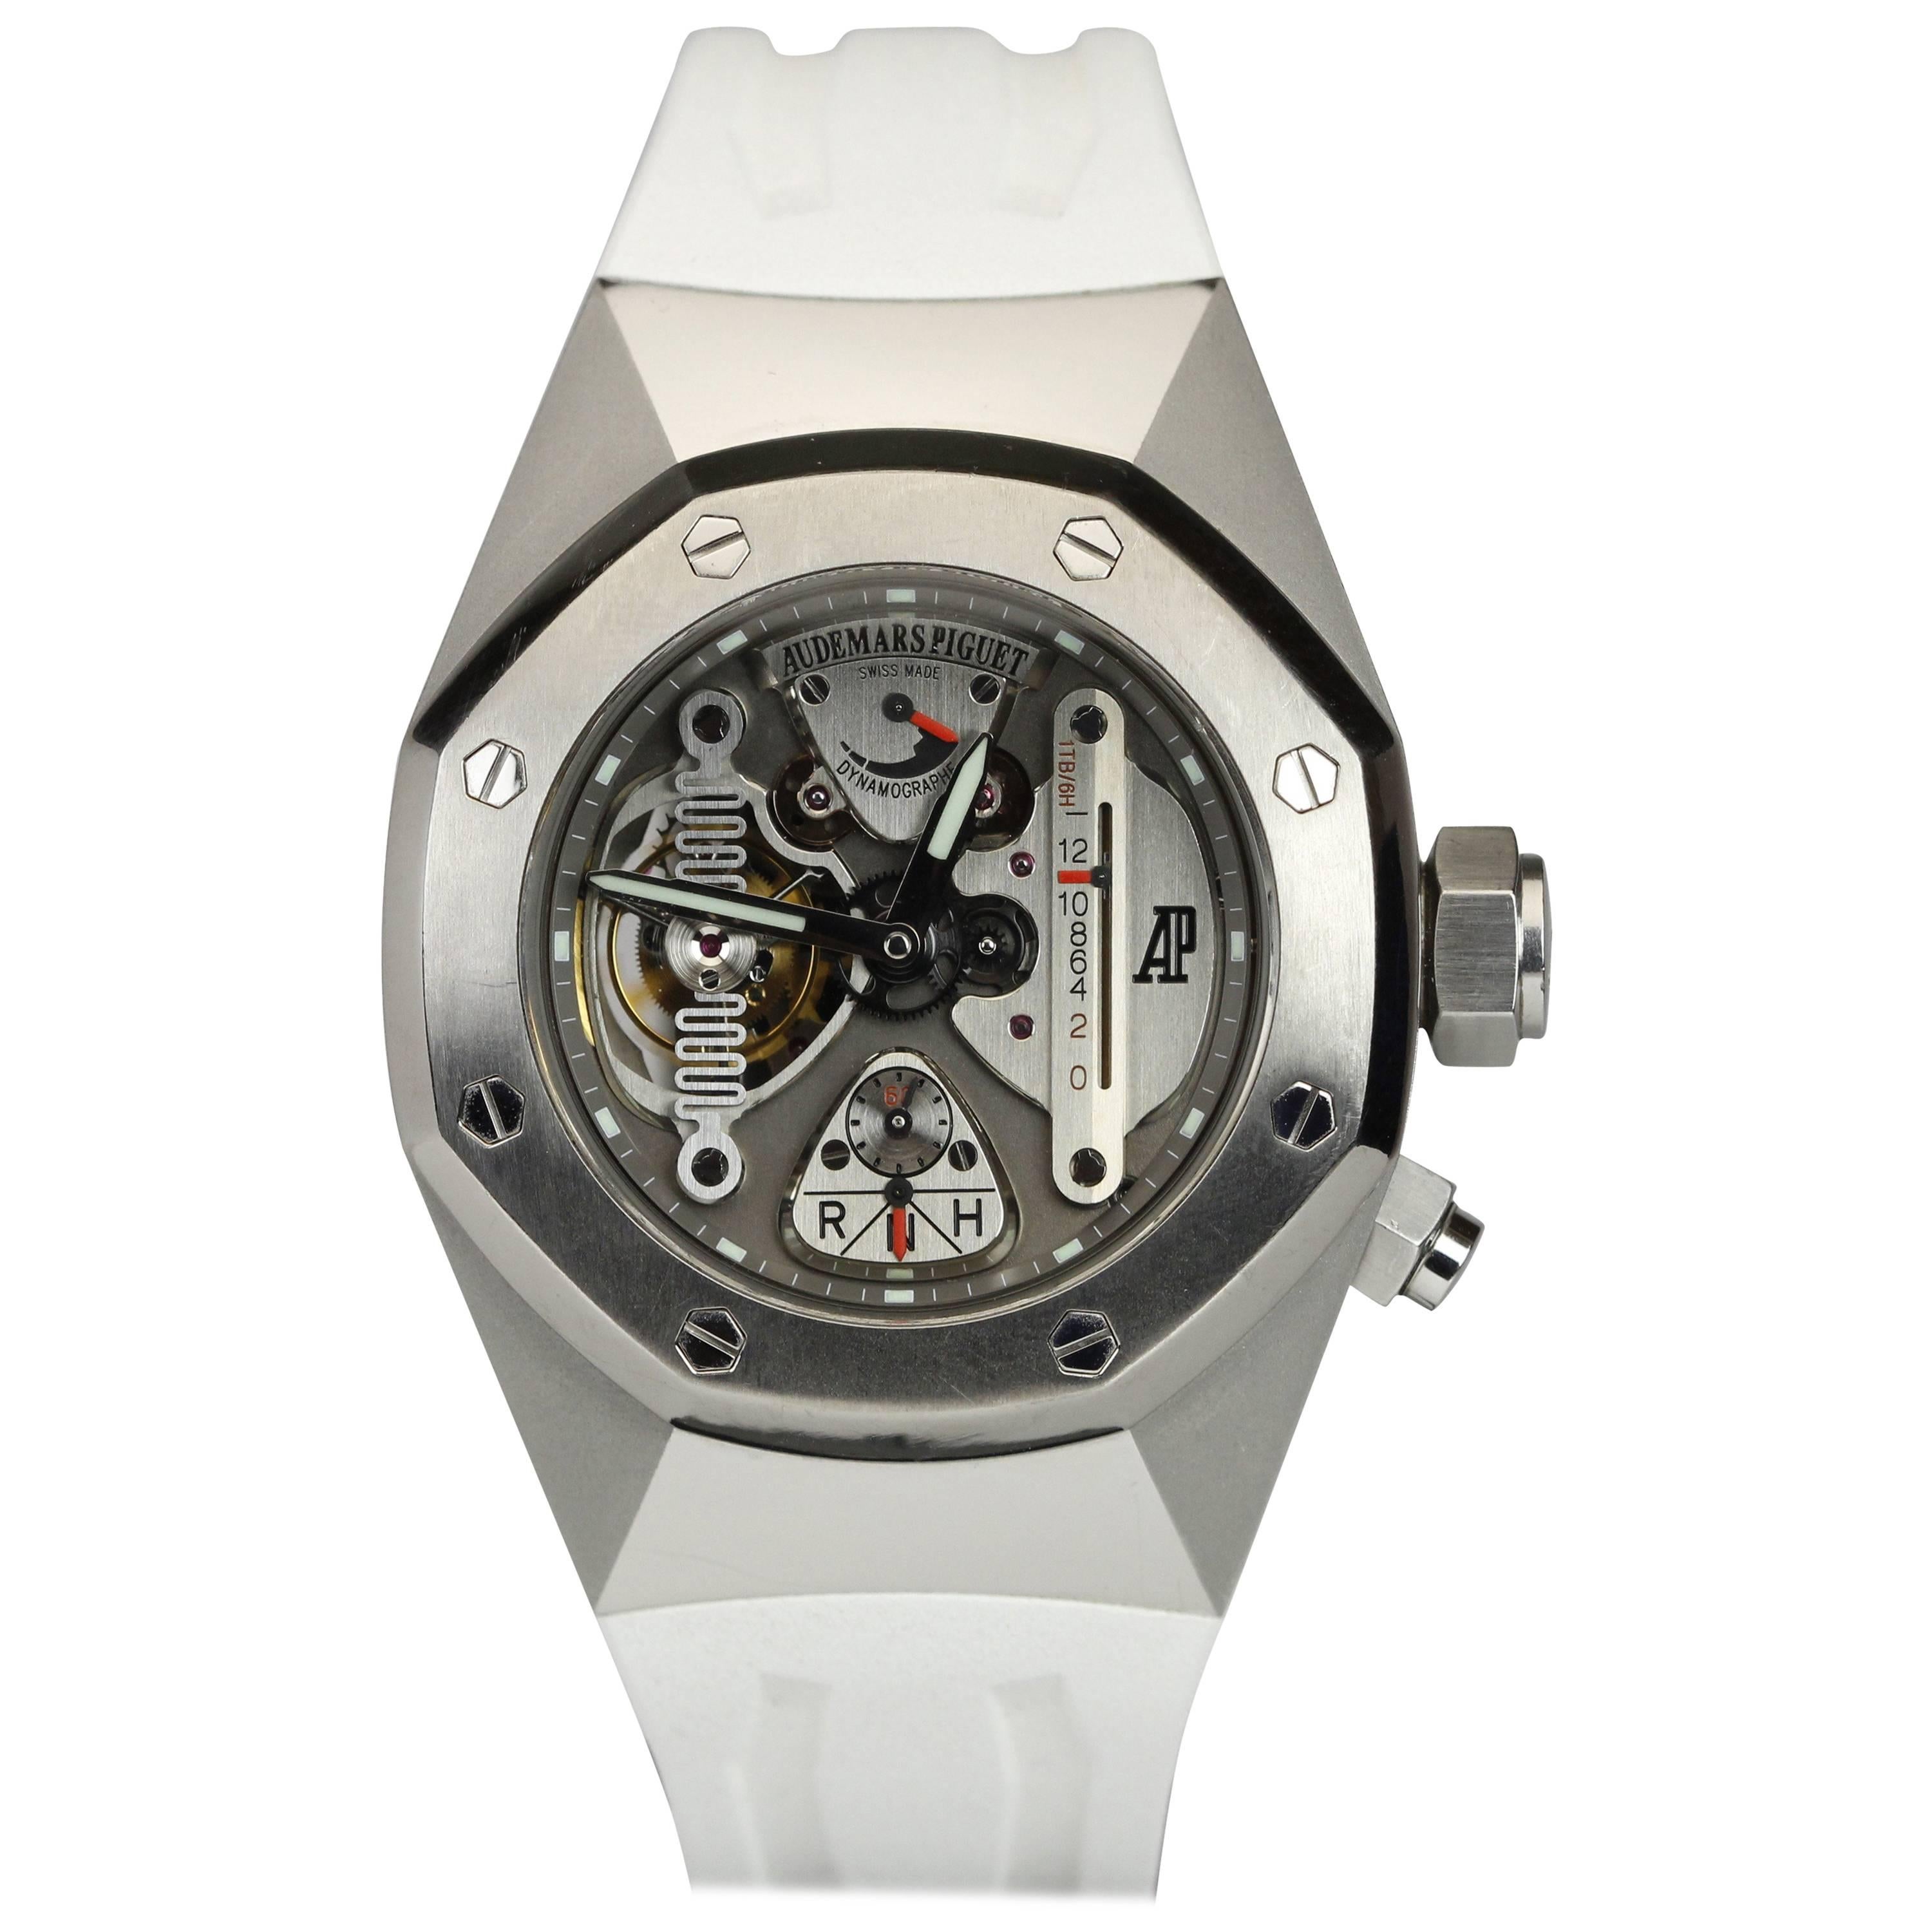 Audemars Piguet Royal Oak Concept CW1 Automatic Wristwatch